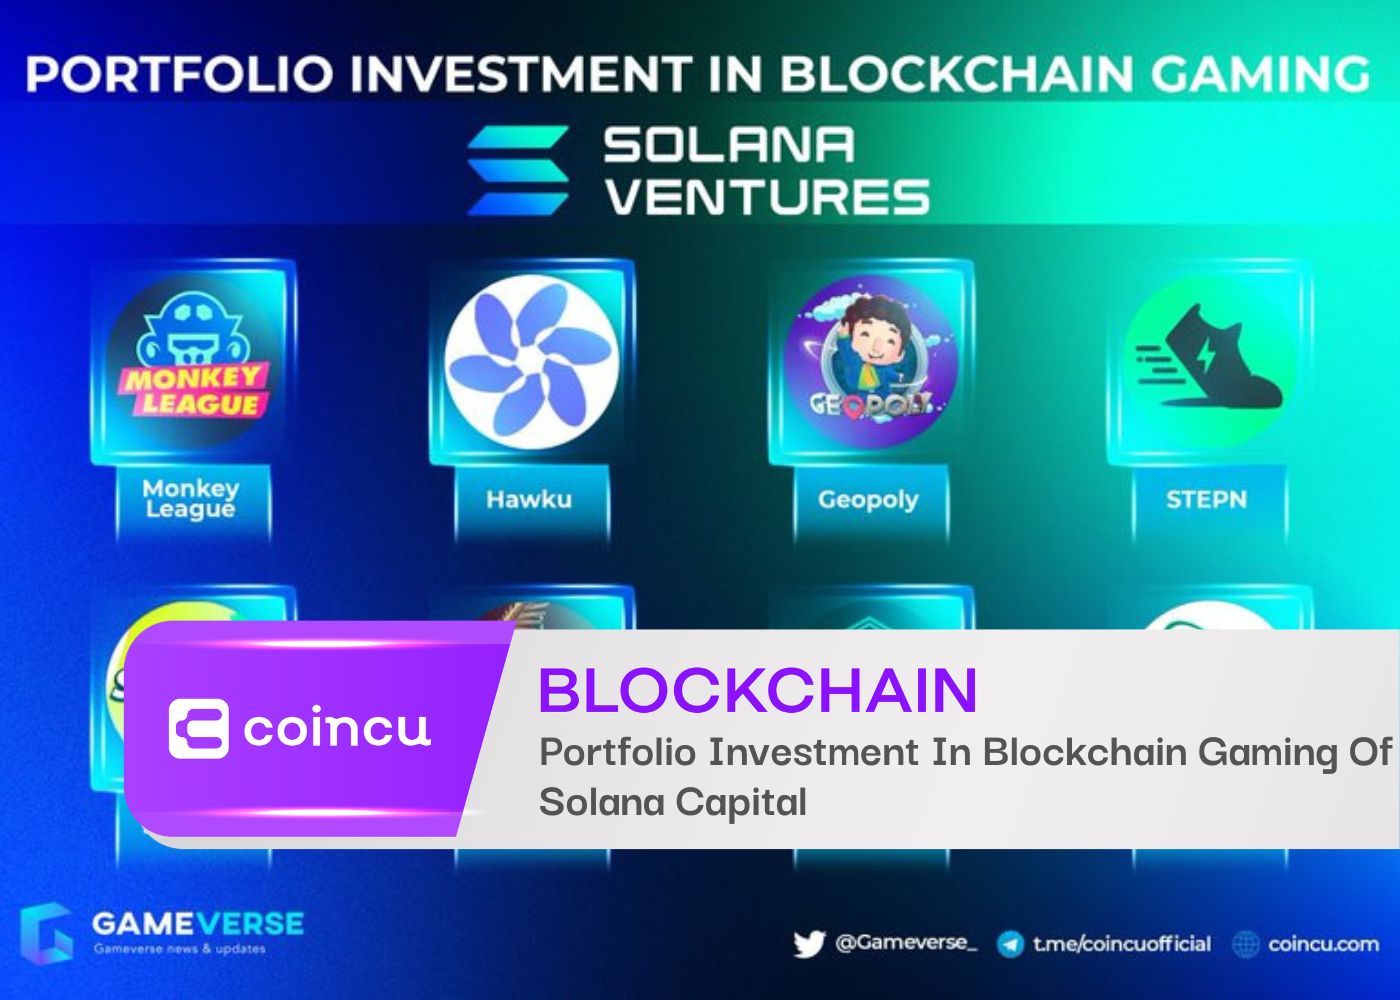 Portfolio Investment In Blockchain Gaming Of Solana Capital